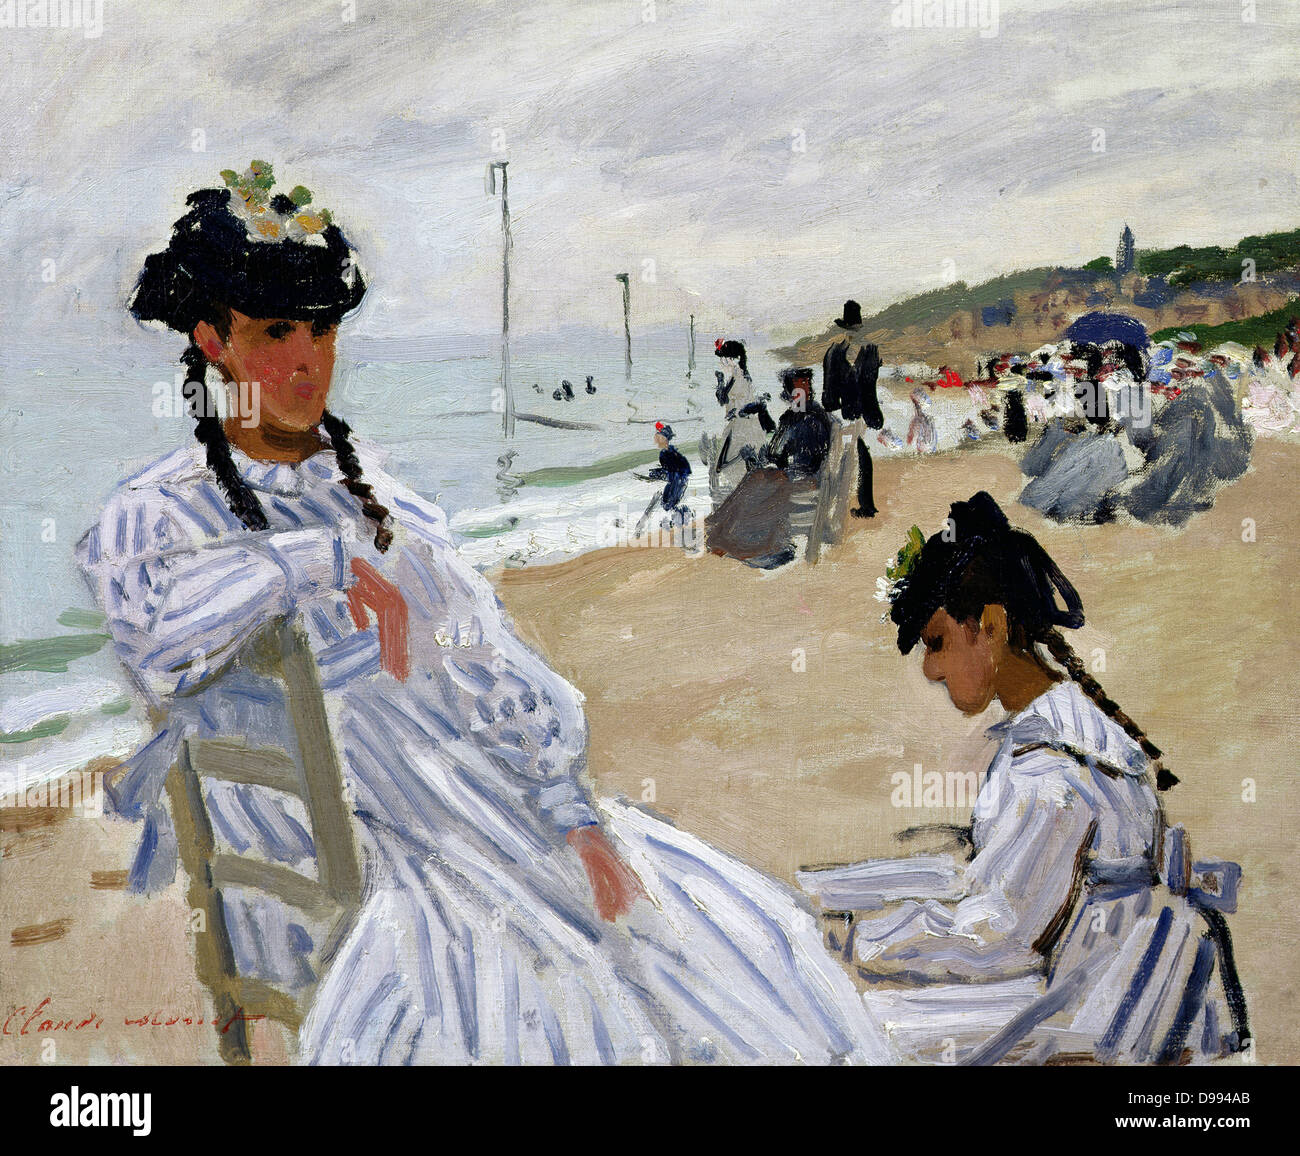 Claude Monet (14 novembre 1840 - 5 décembre 1926), peintre impressionniste français. Le terme Impressionnisme est dérivé de l'intitulé de son tableau Impression, Sunrise (Impression, soleil levant). "Trouville", huile sur toile, 1870-1871 Banque D'Images